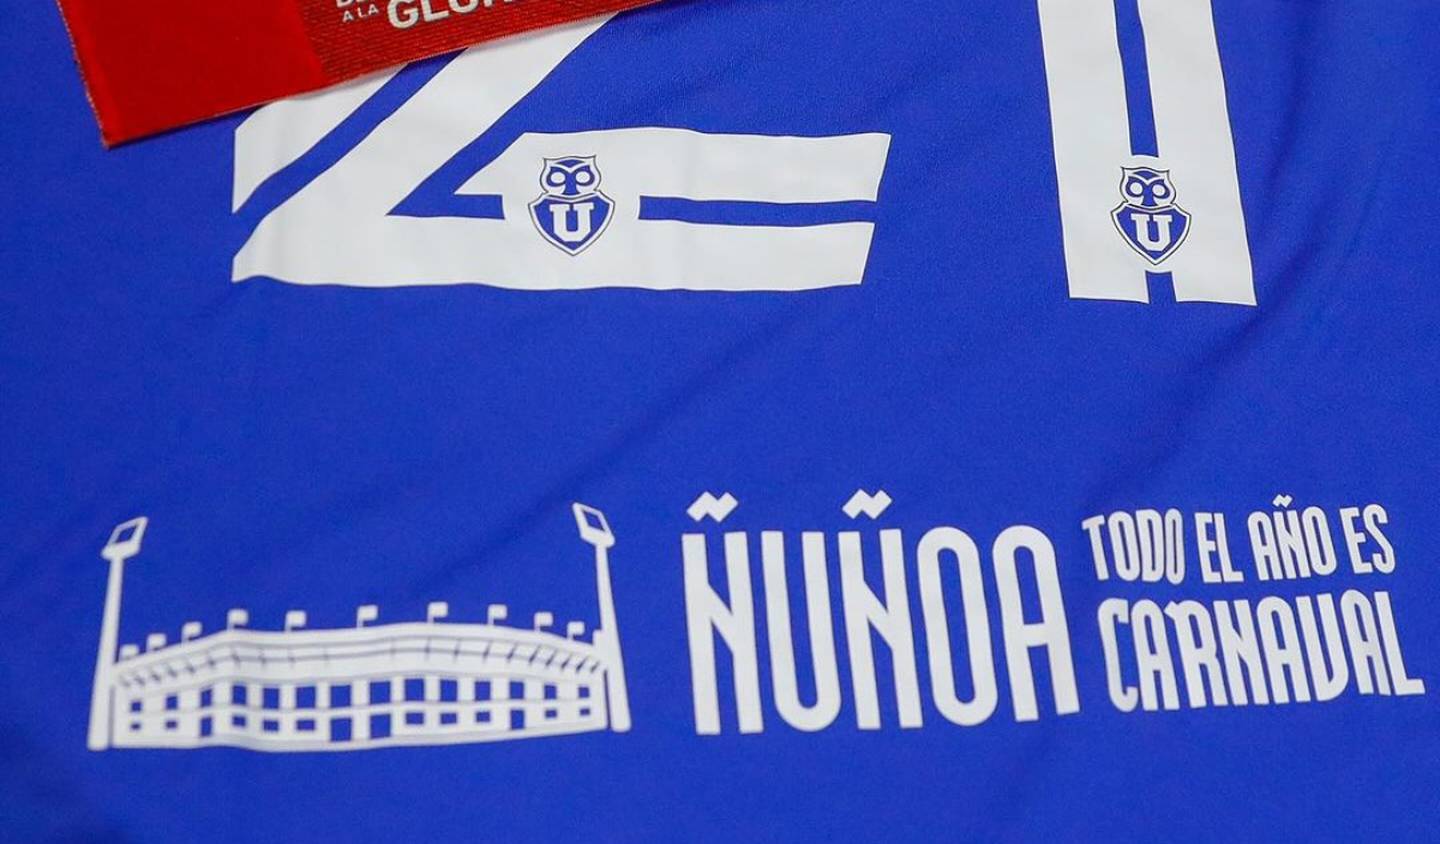 Camiseta de Universidad de Chile con mensaje: "Ñuñoa todo el año es carnaval".